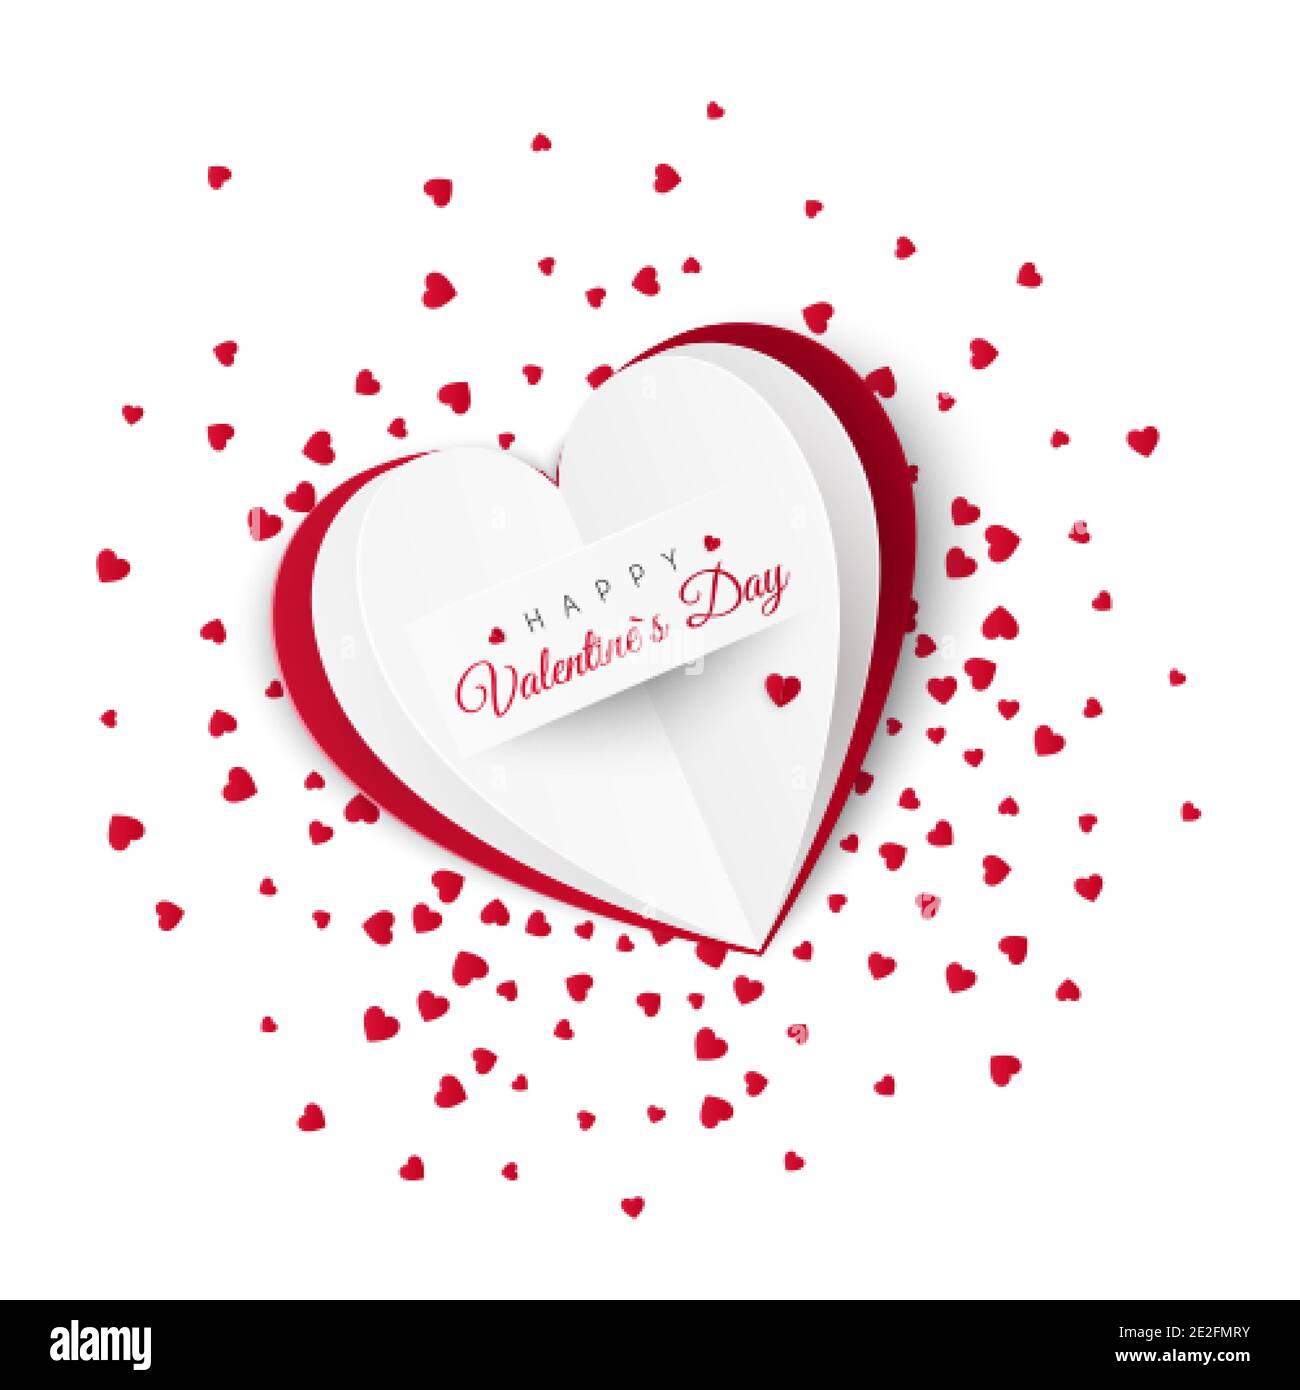 Valentine card con confetti sullo sfondo. Elementi decorativi romantici per il giorno di San Valentino o il giorno delle donne. Illustrazione vettoriale isolata su sfondo bianco Illustrazione Vettoriale